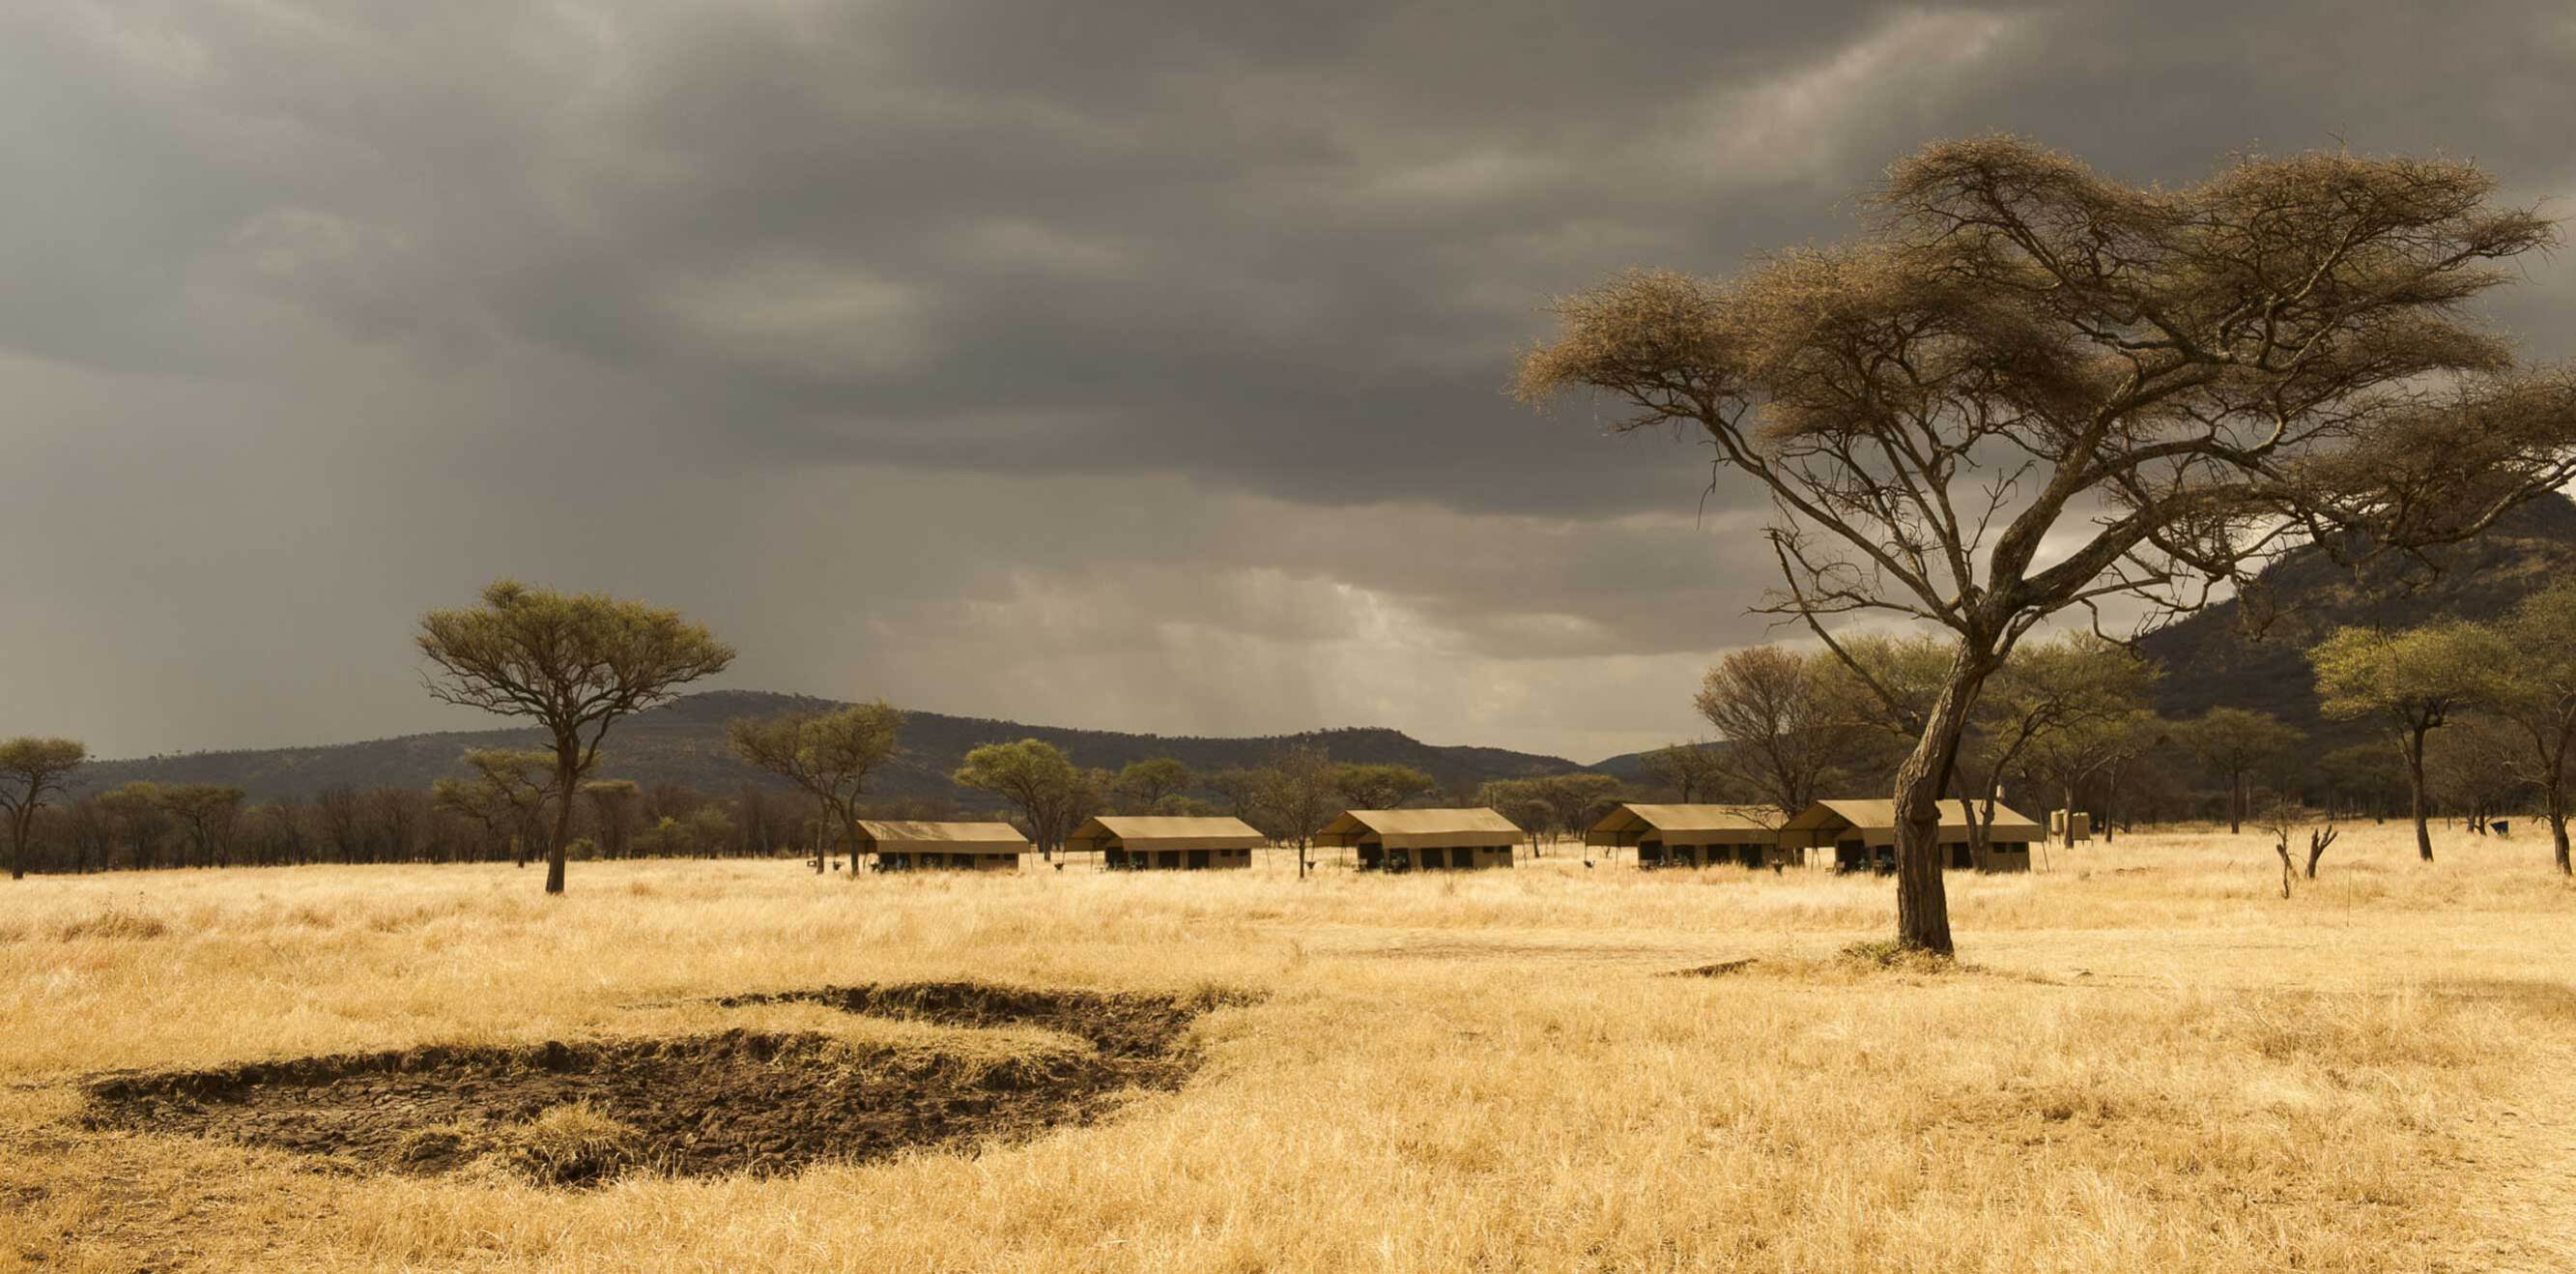 El safari ideal para quienes buscan una escapada a África alojándose en lugares de ensueño.